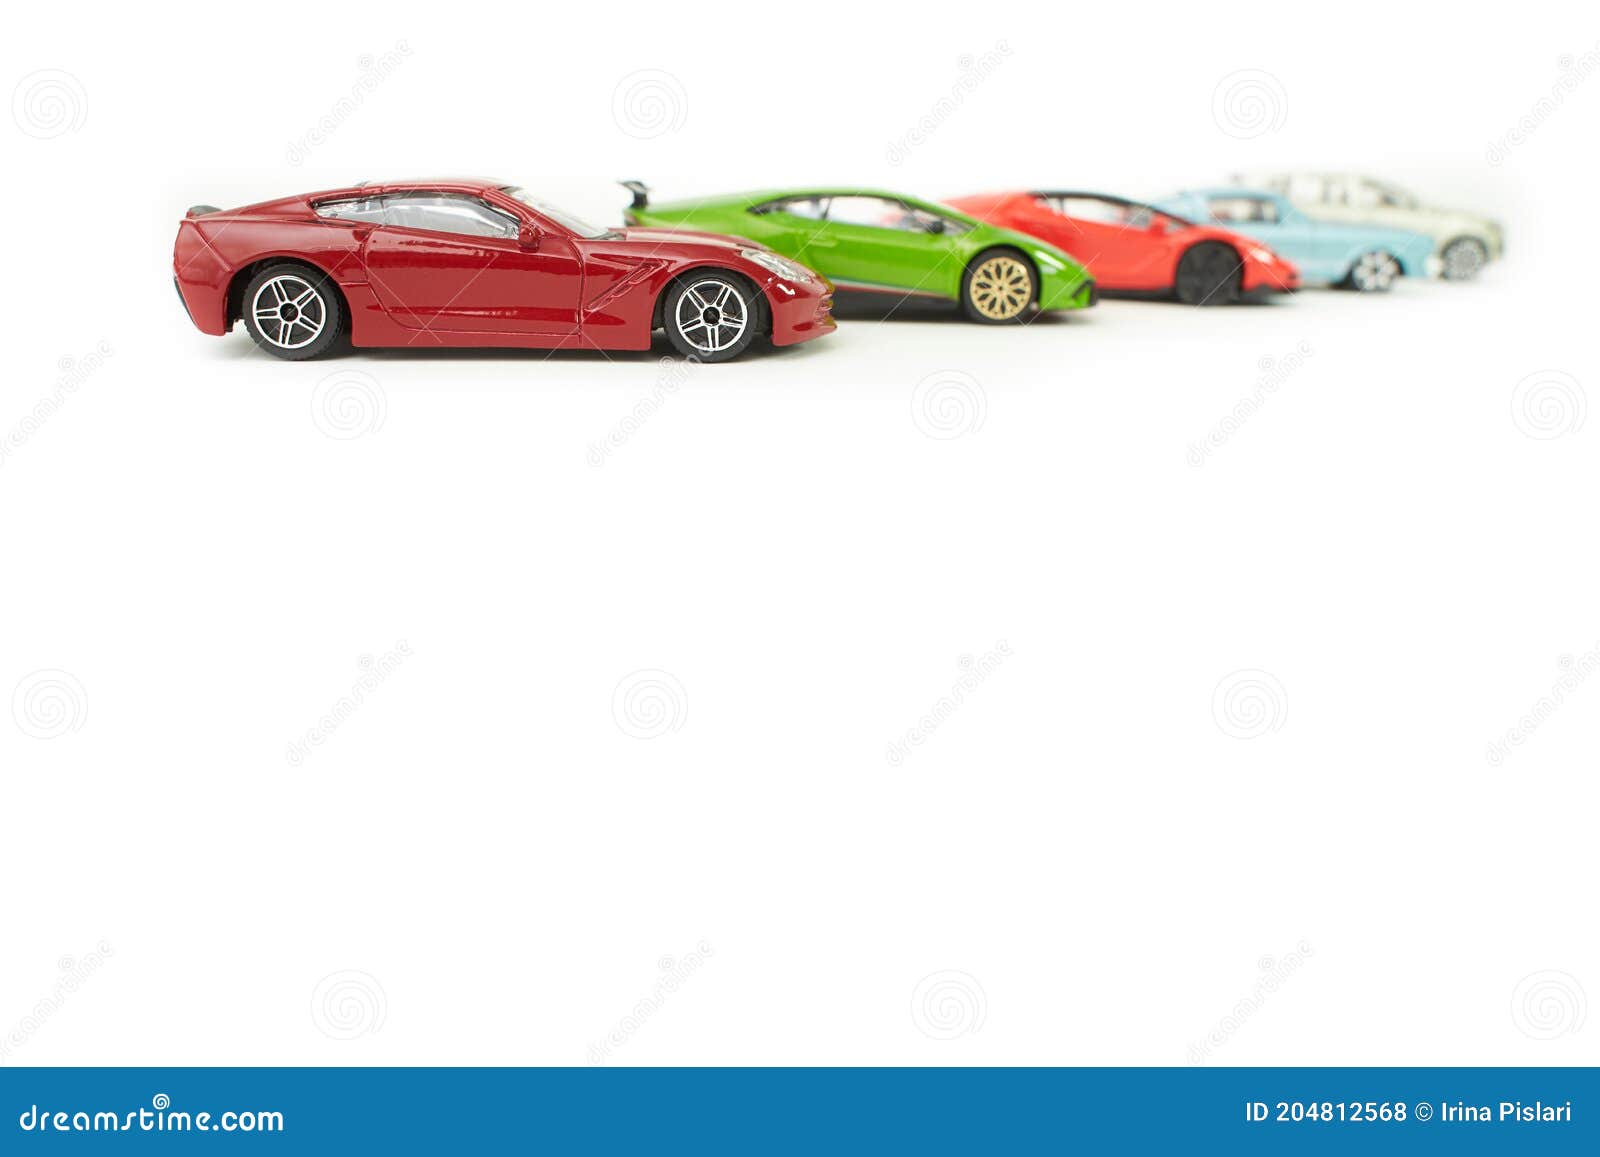 Speelgoedauto S Op Witte Achtergrond Stock Foto - Image of klassiek: 204812568